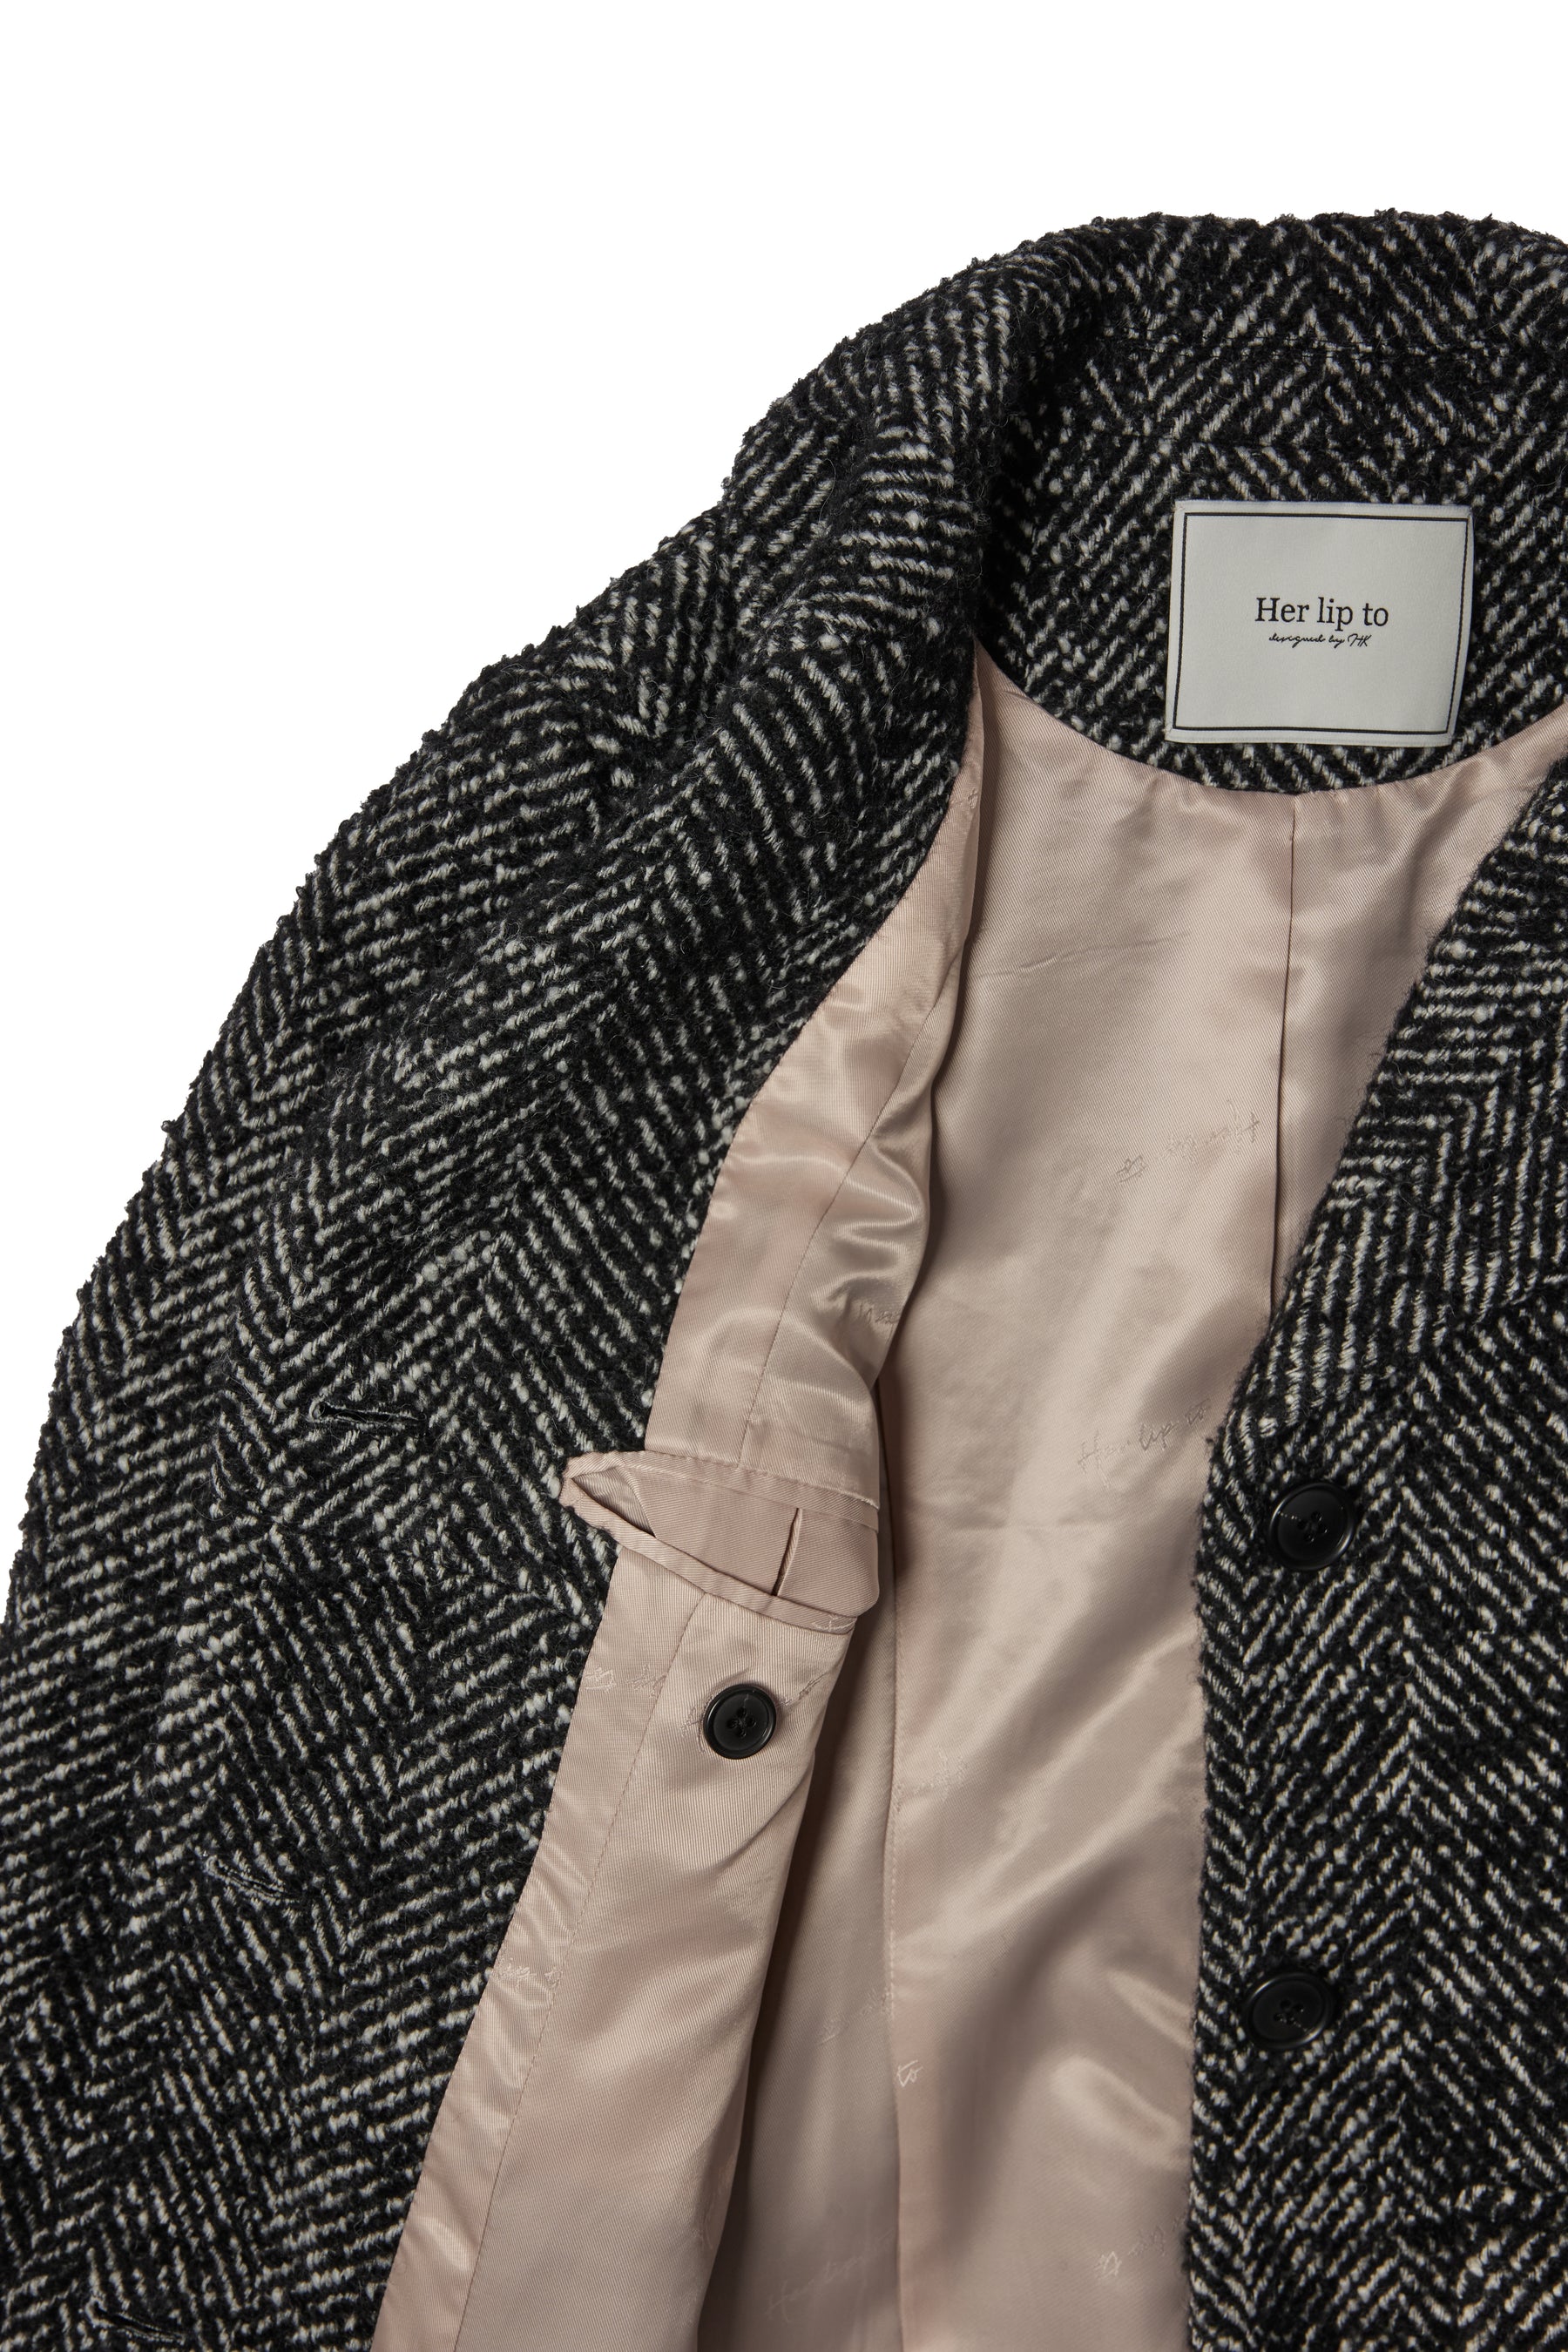 検討させて頂きます^^Herringbone Wool-Blend Classic Coat